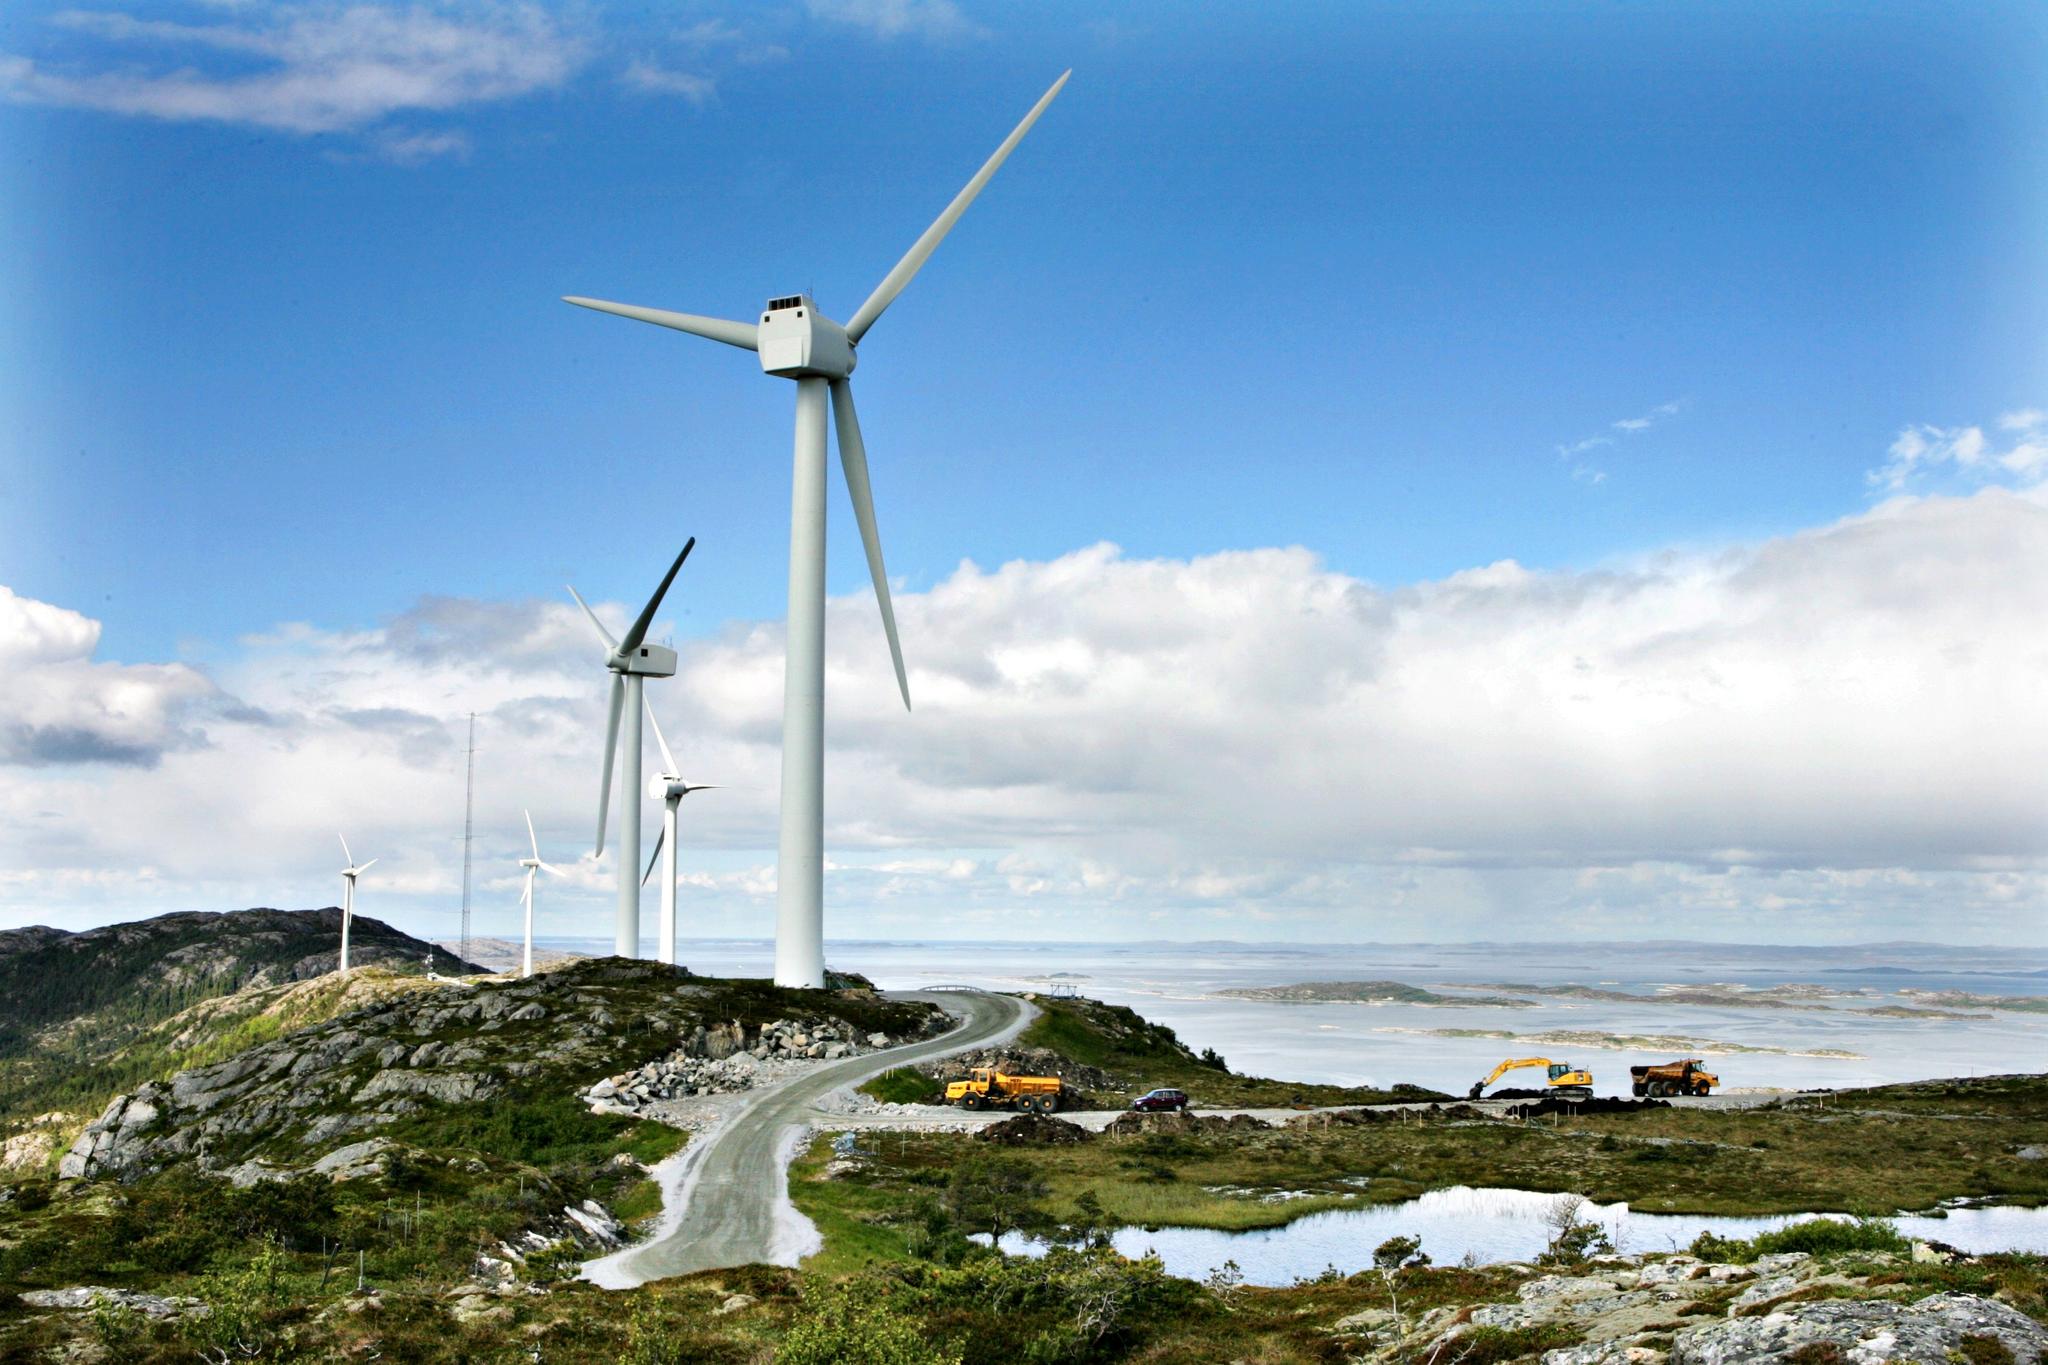  Mye ny vindkraft er nødvendig for å kutte norske klimautslipp (illustrasjonsfoto.)